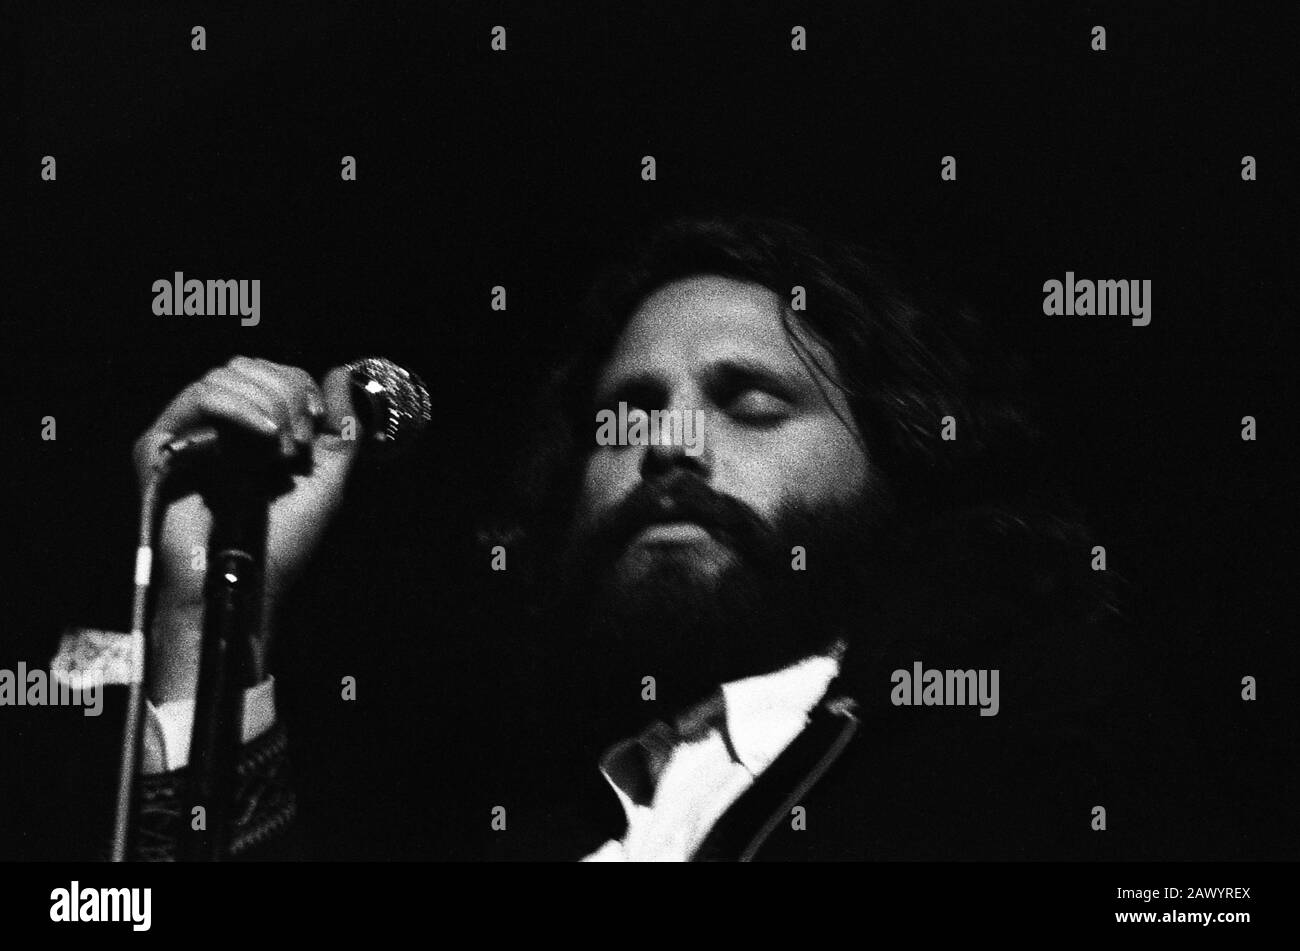 Jim Morrison du groupe The Doors au célèbre festival Isle of Wight en 1970, on estime qu'il y a eu entre 600 et 700 000 personnes. Samedi 29 Août 1970 Banque D'Images